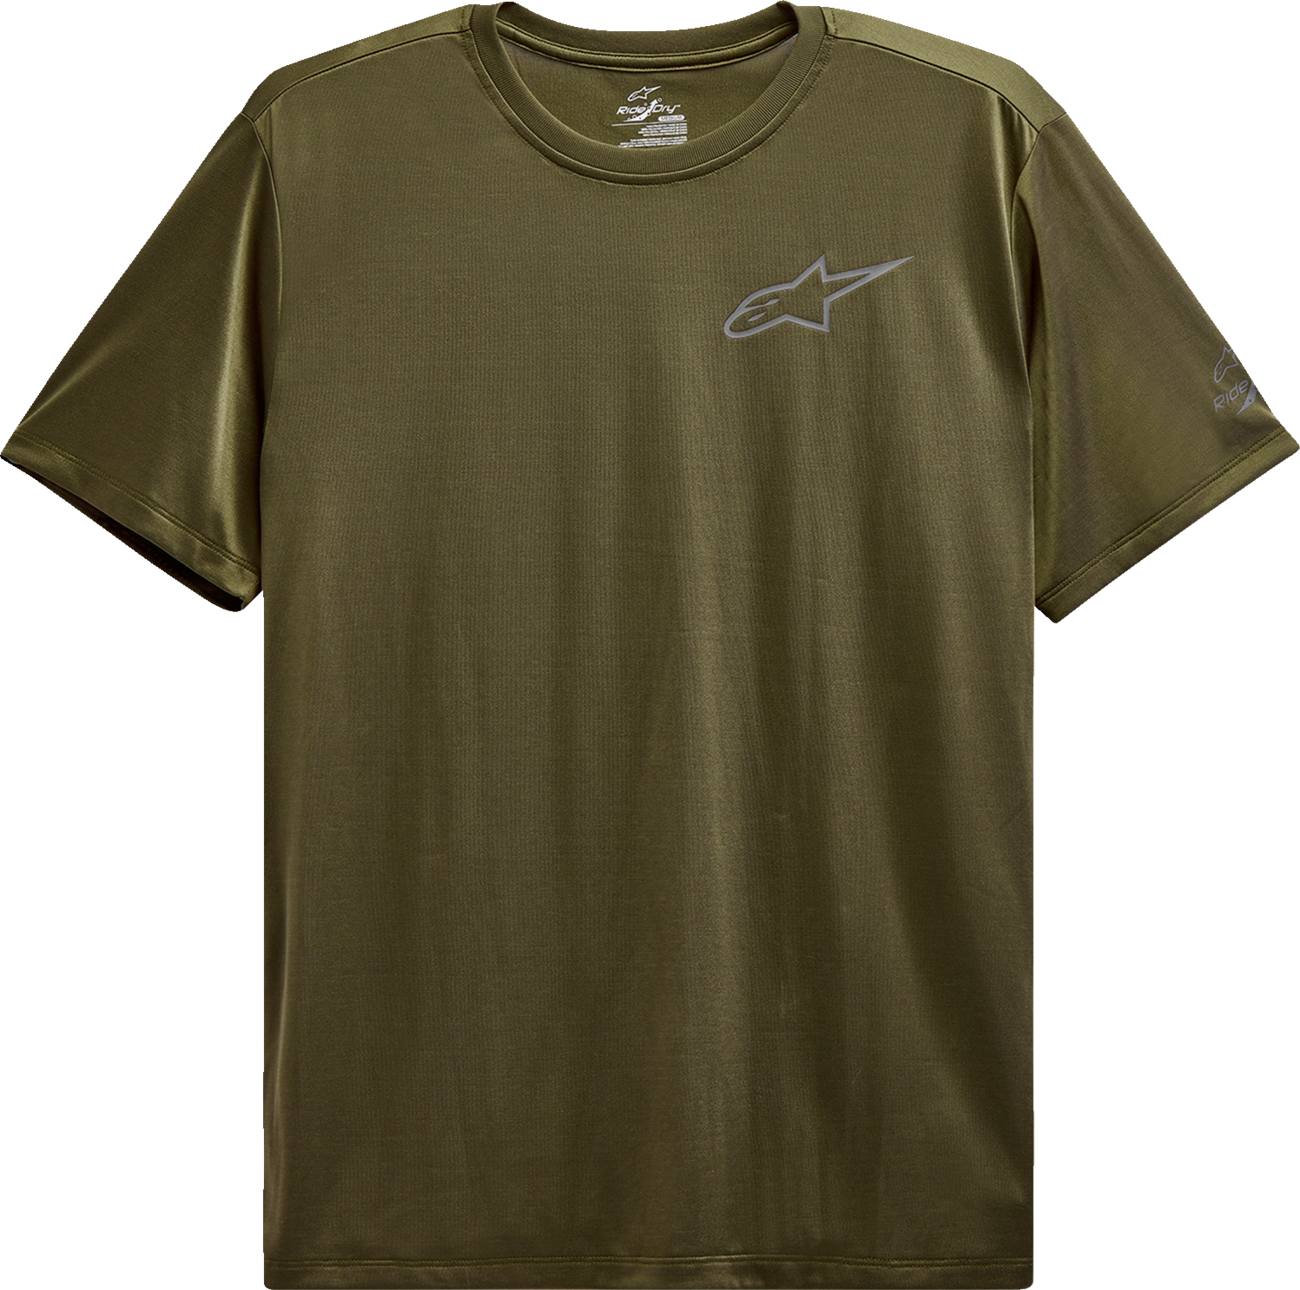 ALPINESTARS Pursue Performance T-Shirt - Military Green - 2XL 123272010690XXL